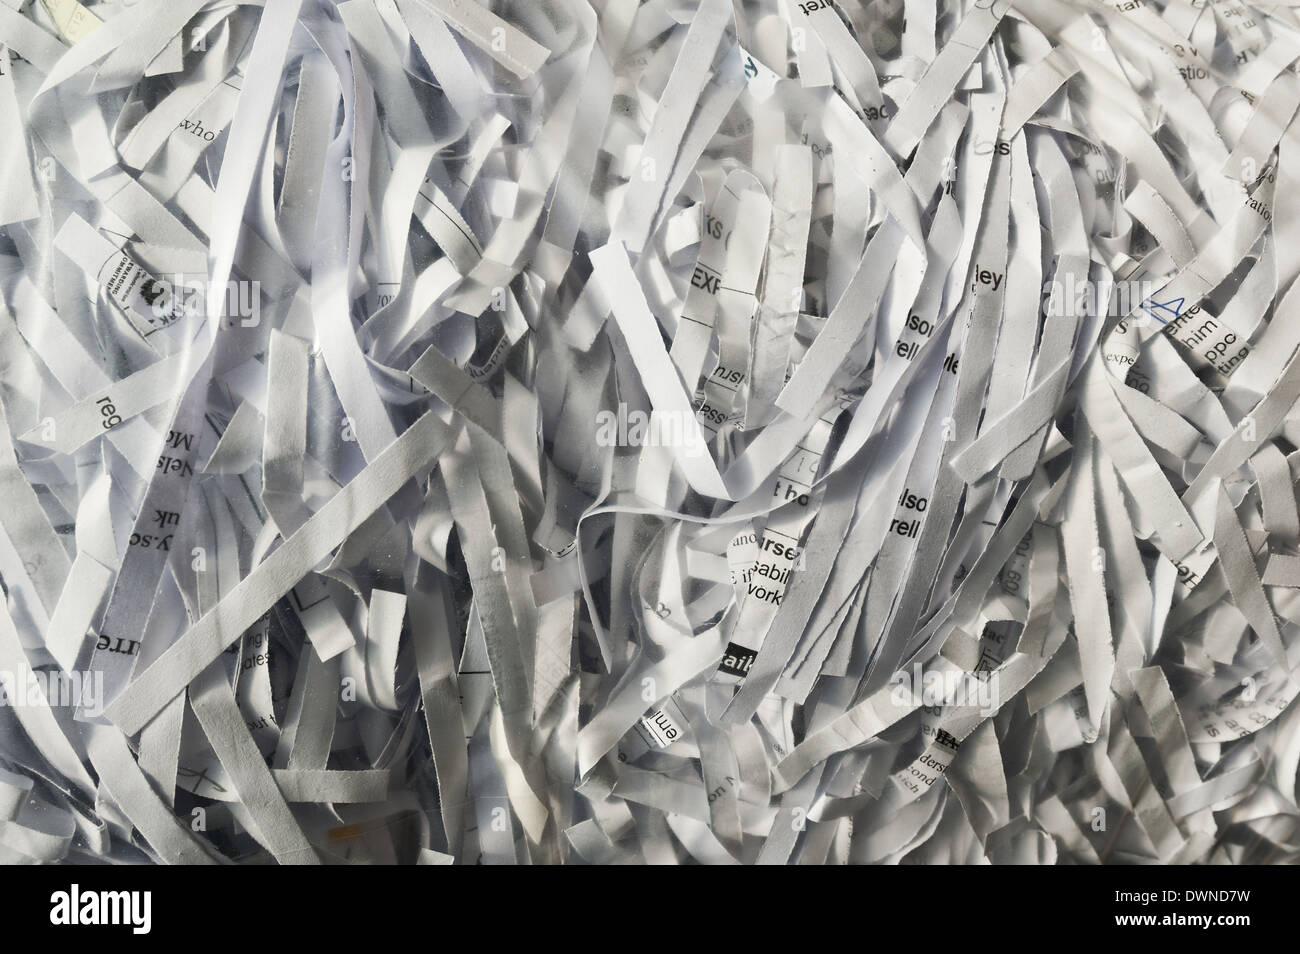 Documentos purgados los desechos de papel dentro de una bolsa transparente de plástico fino listo para reciclar Foto de stock